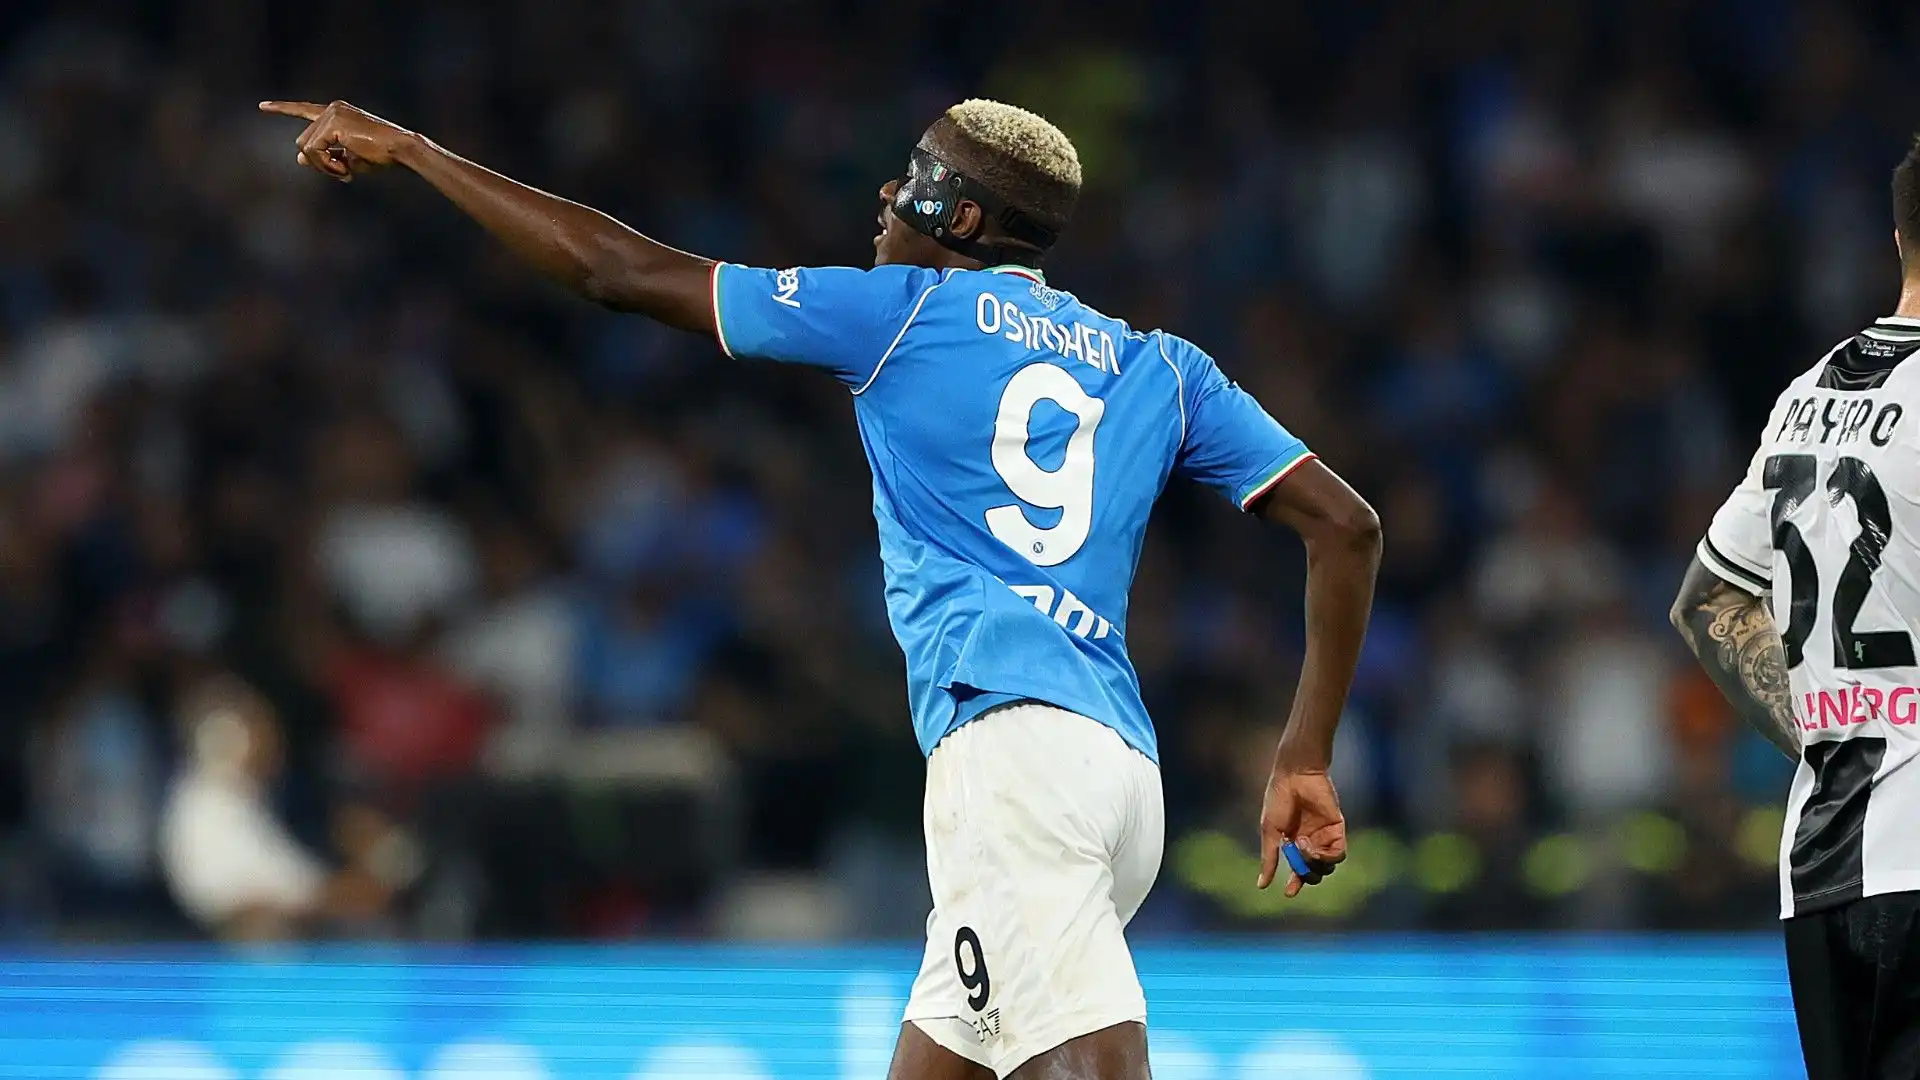 Nonostante il gol contro l'Udinese, il bomber nigeriano non è tranquillo all'ombra del Vesuvio